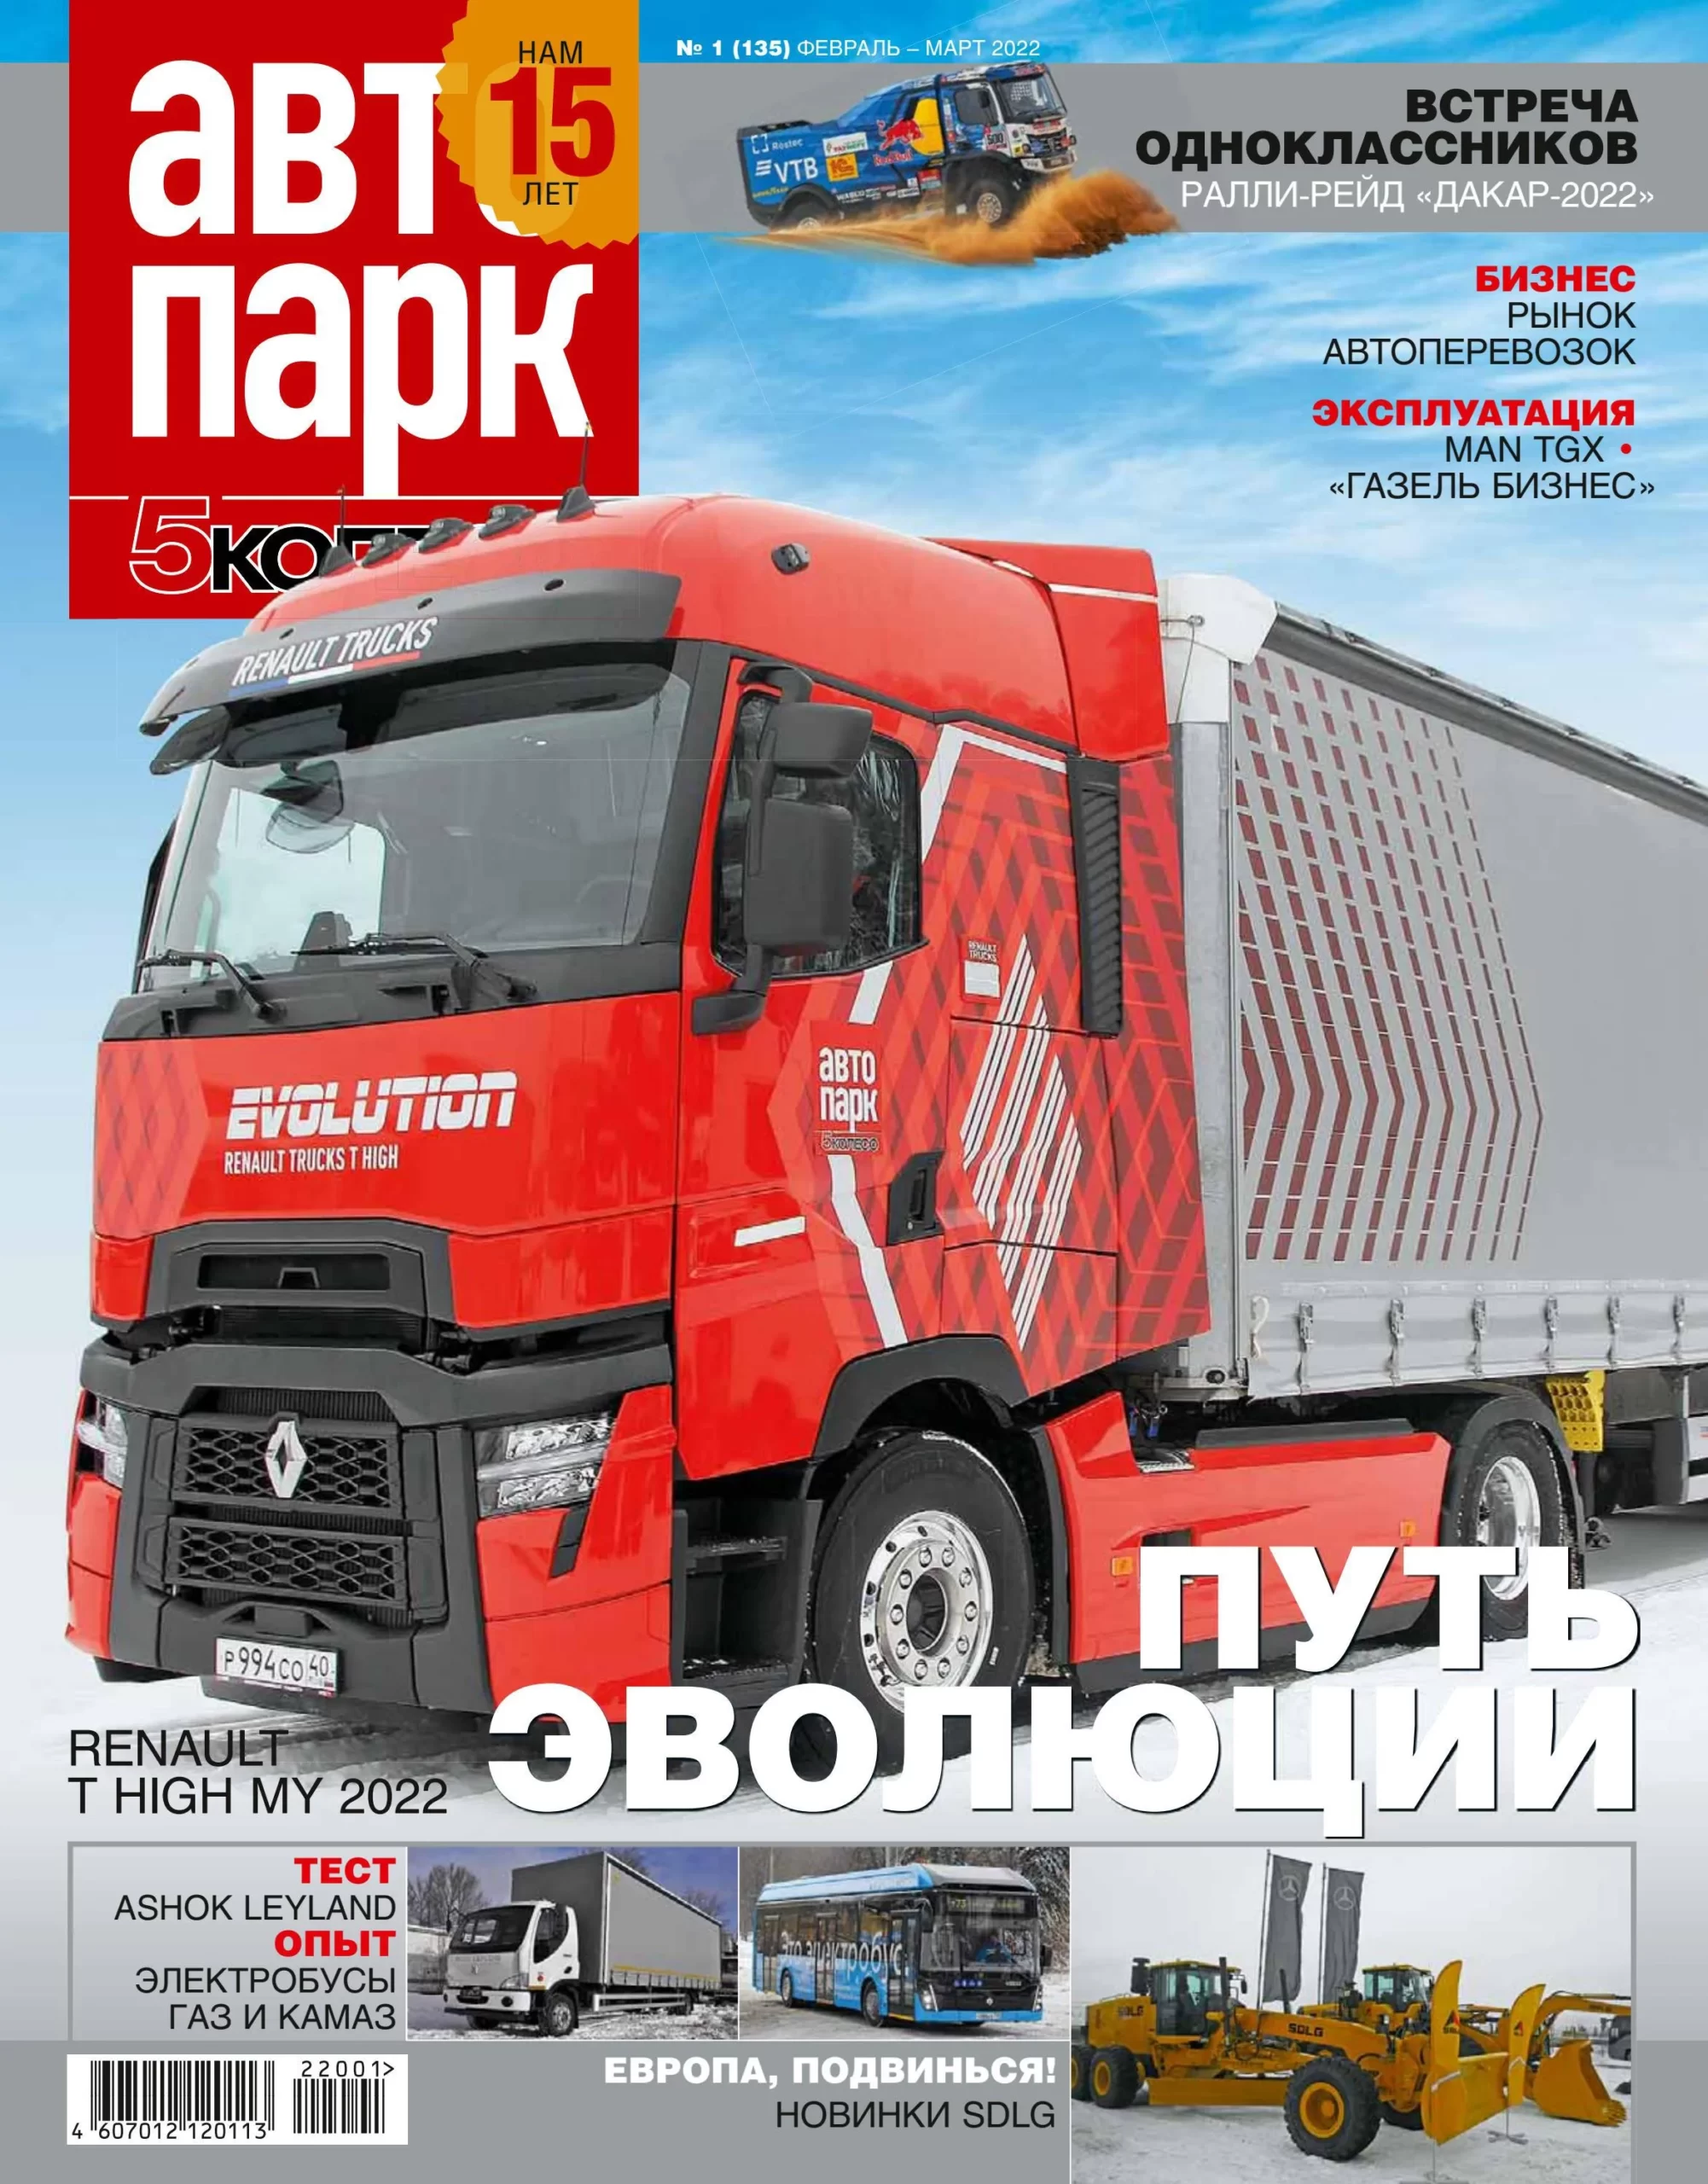 Все больше грузовиков заказываются для доставки в центр Санкт-Петербурга с каждым годом - данные за 2008-03-27